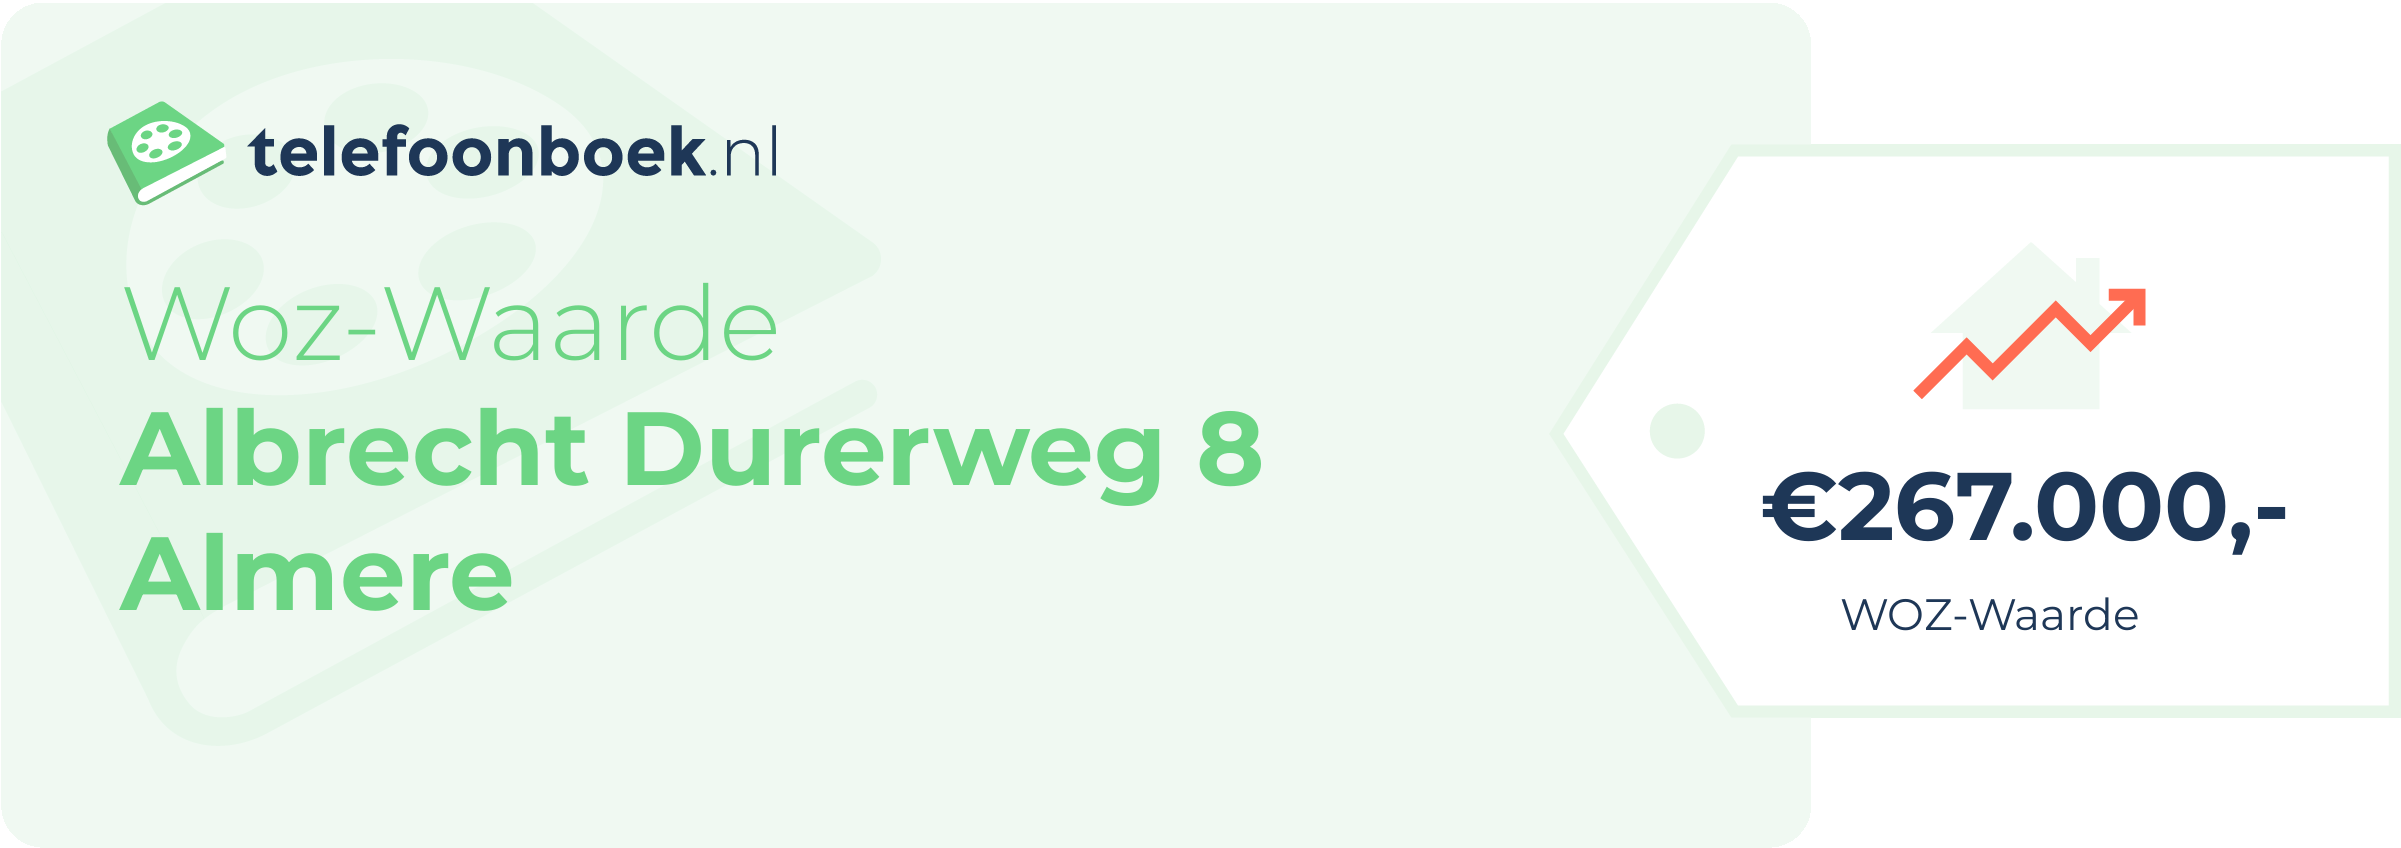 WOZ-waarde Albrecht Durerweg 8 Almere